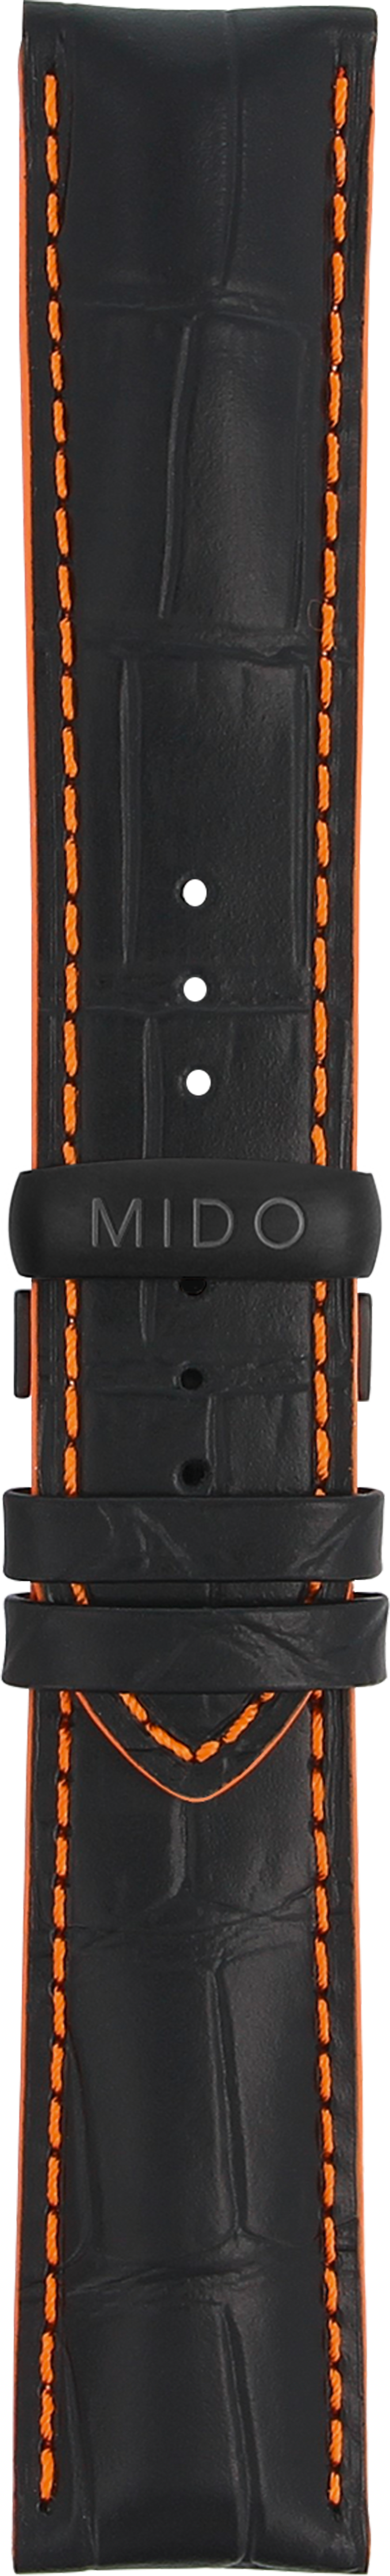 Mido Multifort schwarzes Rindsleder-Armband